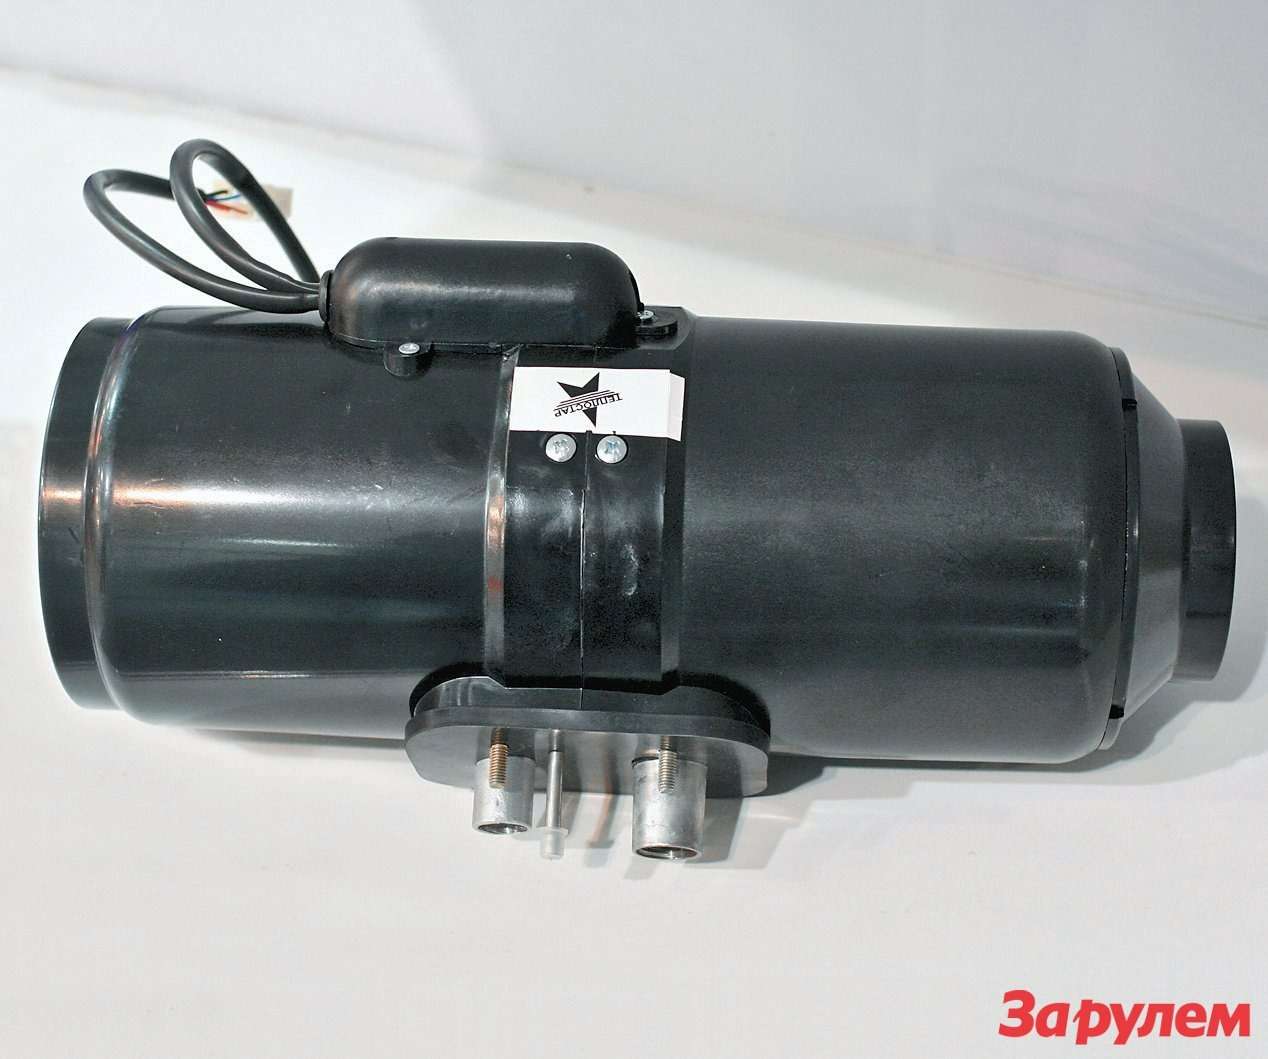 4-киловаттный «Планар-4Д» из Самары оснащен сборным теплообменником:  оребренный алюминиевый радиатор состоит из двух половинок